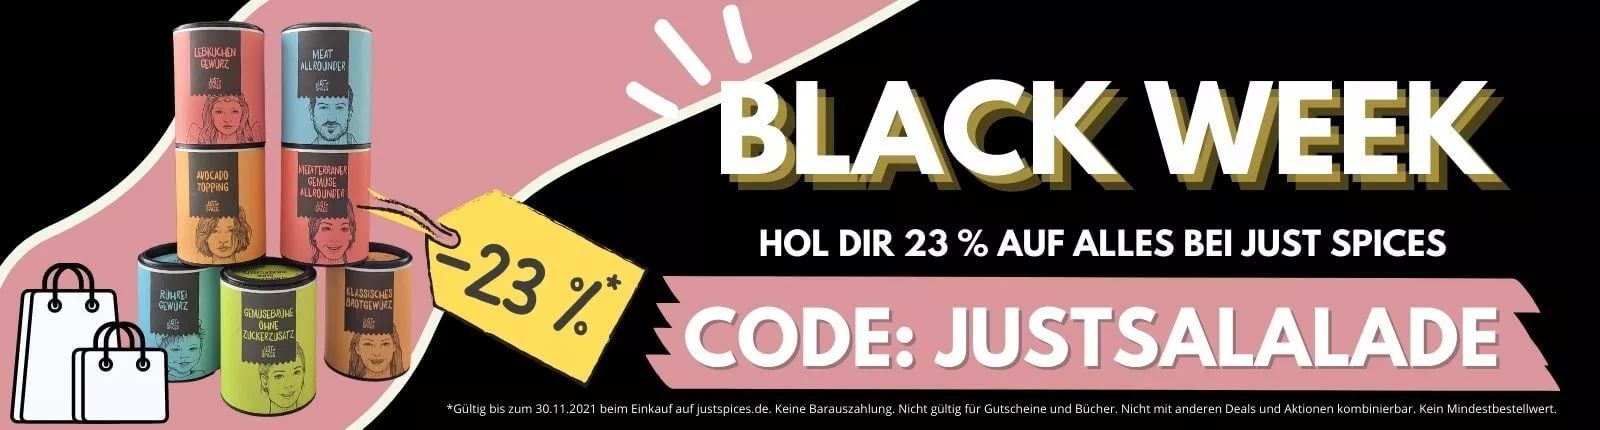 Black Week 2021 bei Just Spices 23 % Rabatt mit dem Code justsalalade